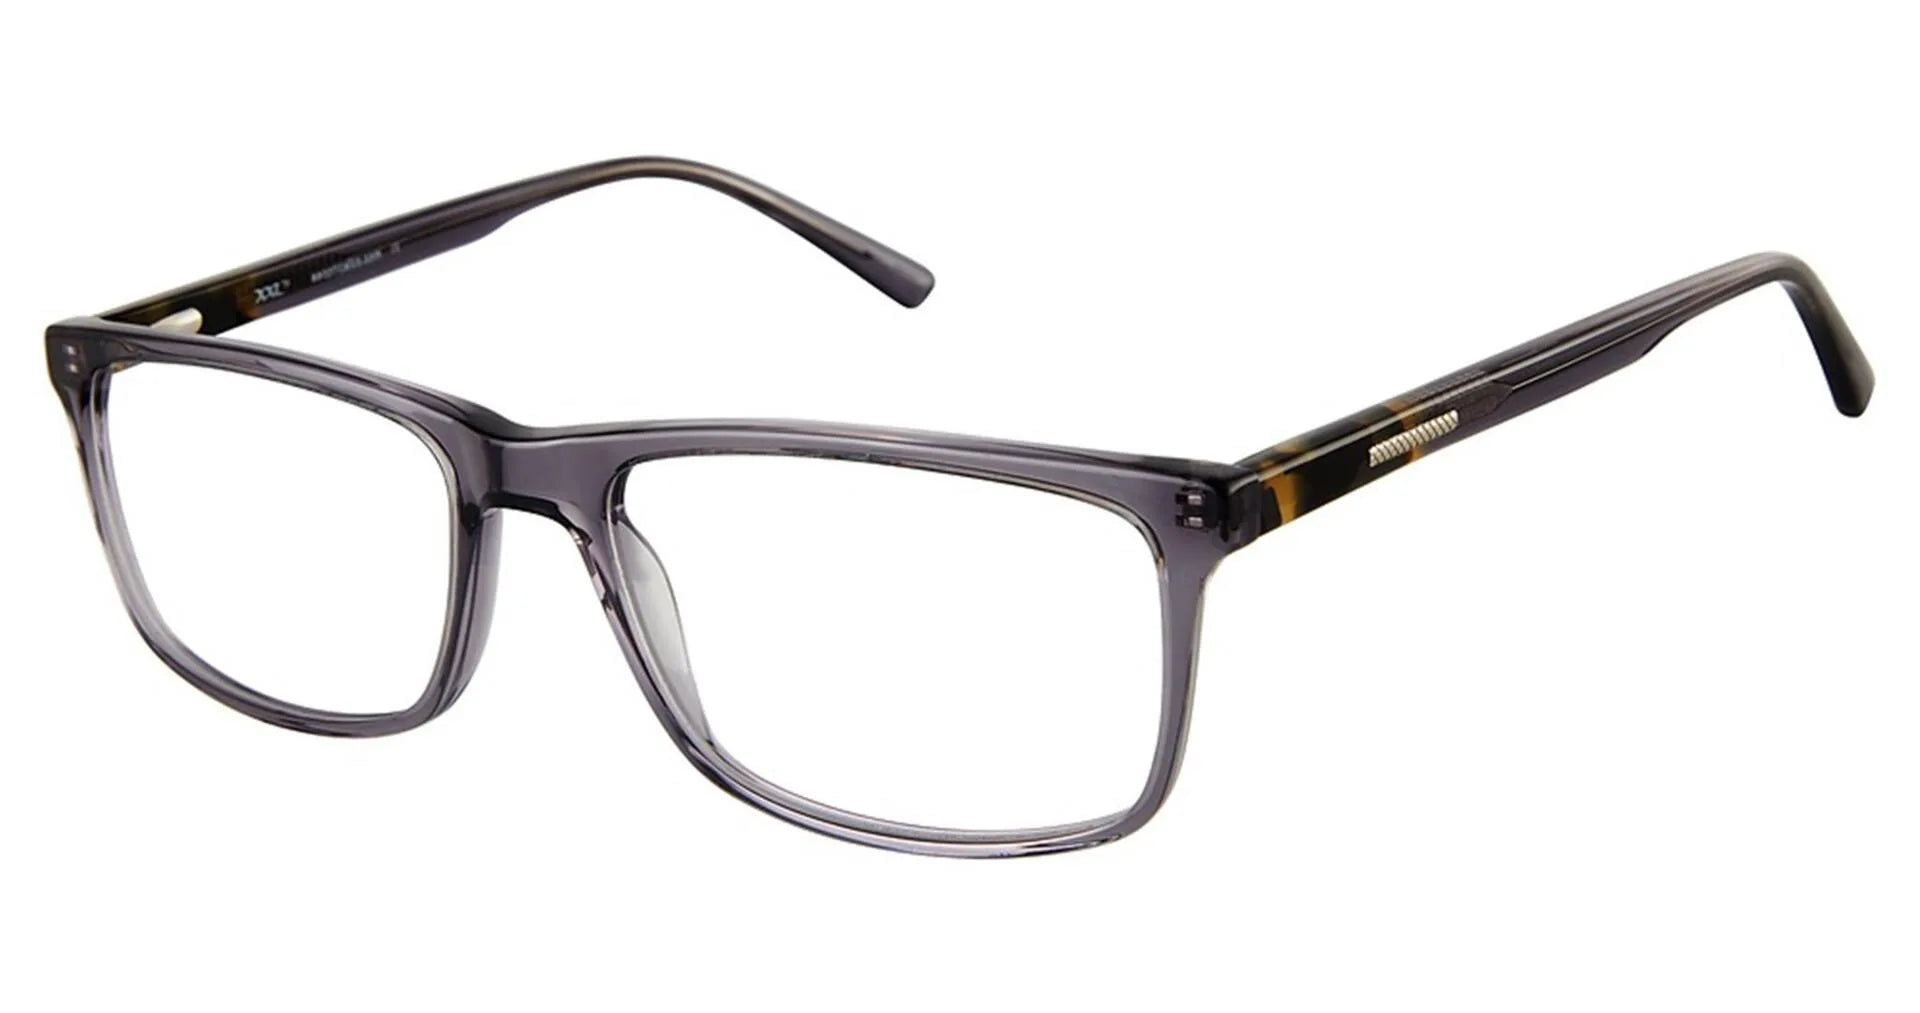 XXL Eyewear Hawkeye Eyeglasses Grey